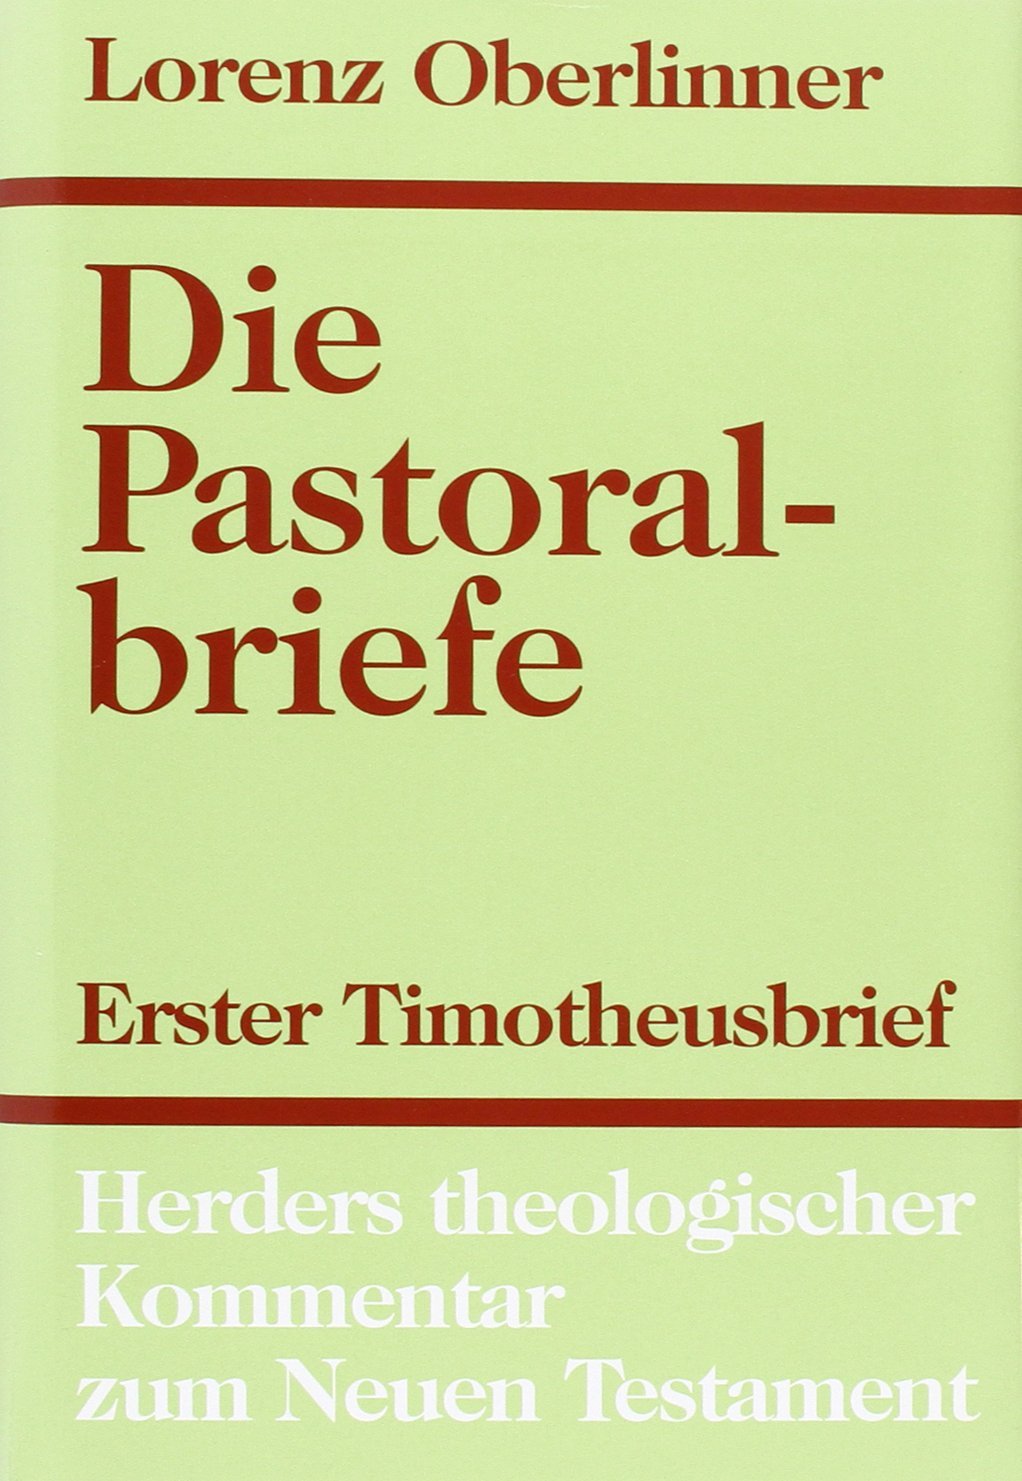 Die Pastoralbriefe (Herders theologischer Kommentar zum neuen Testament) - Lorenz Oberlinner